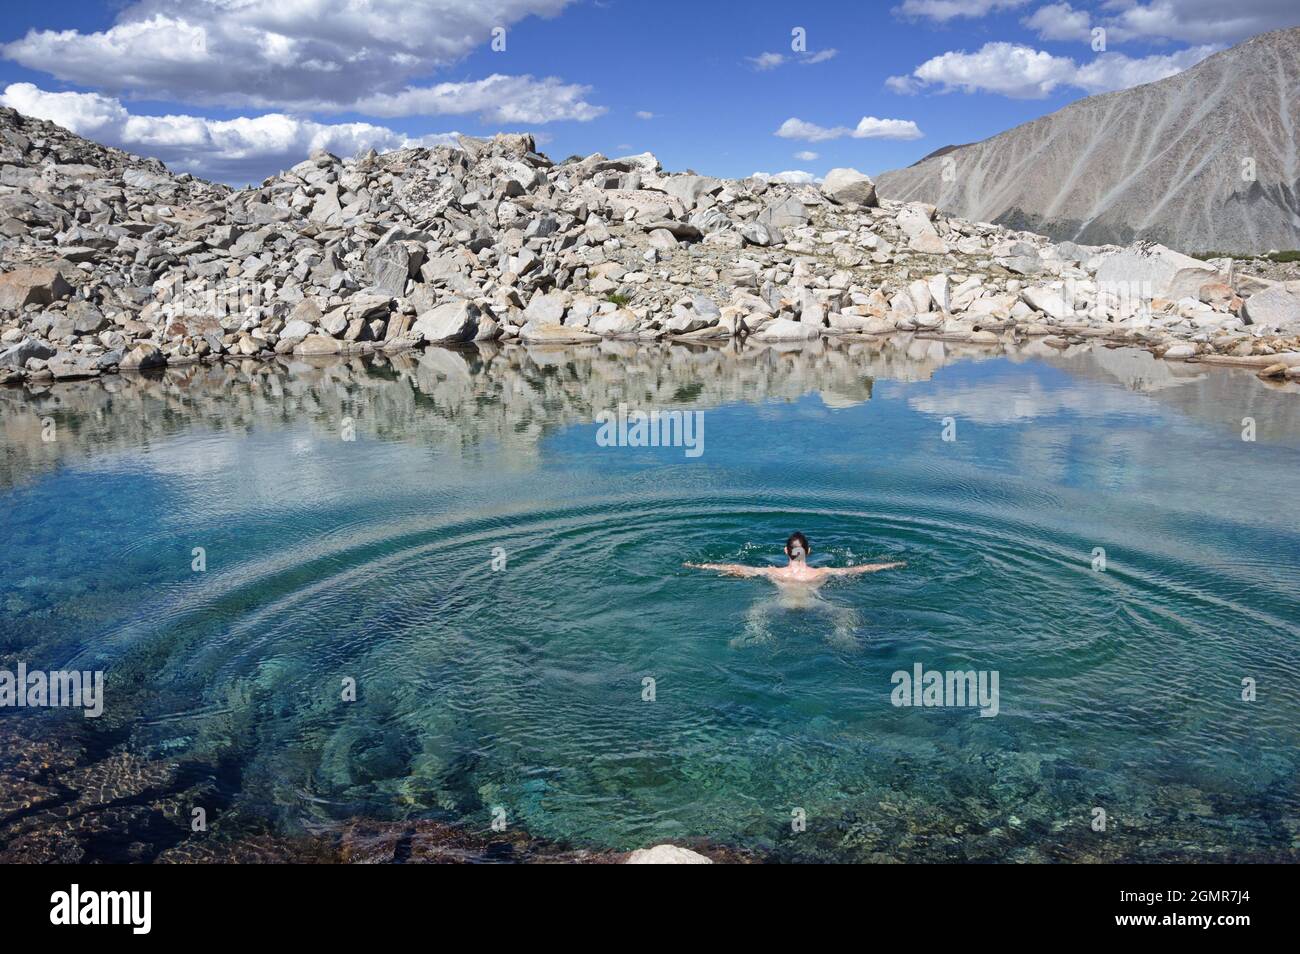 homme nageant dans une piscine de montagne bleue fraîche entourée de rochers Banque D'Images